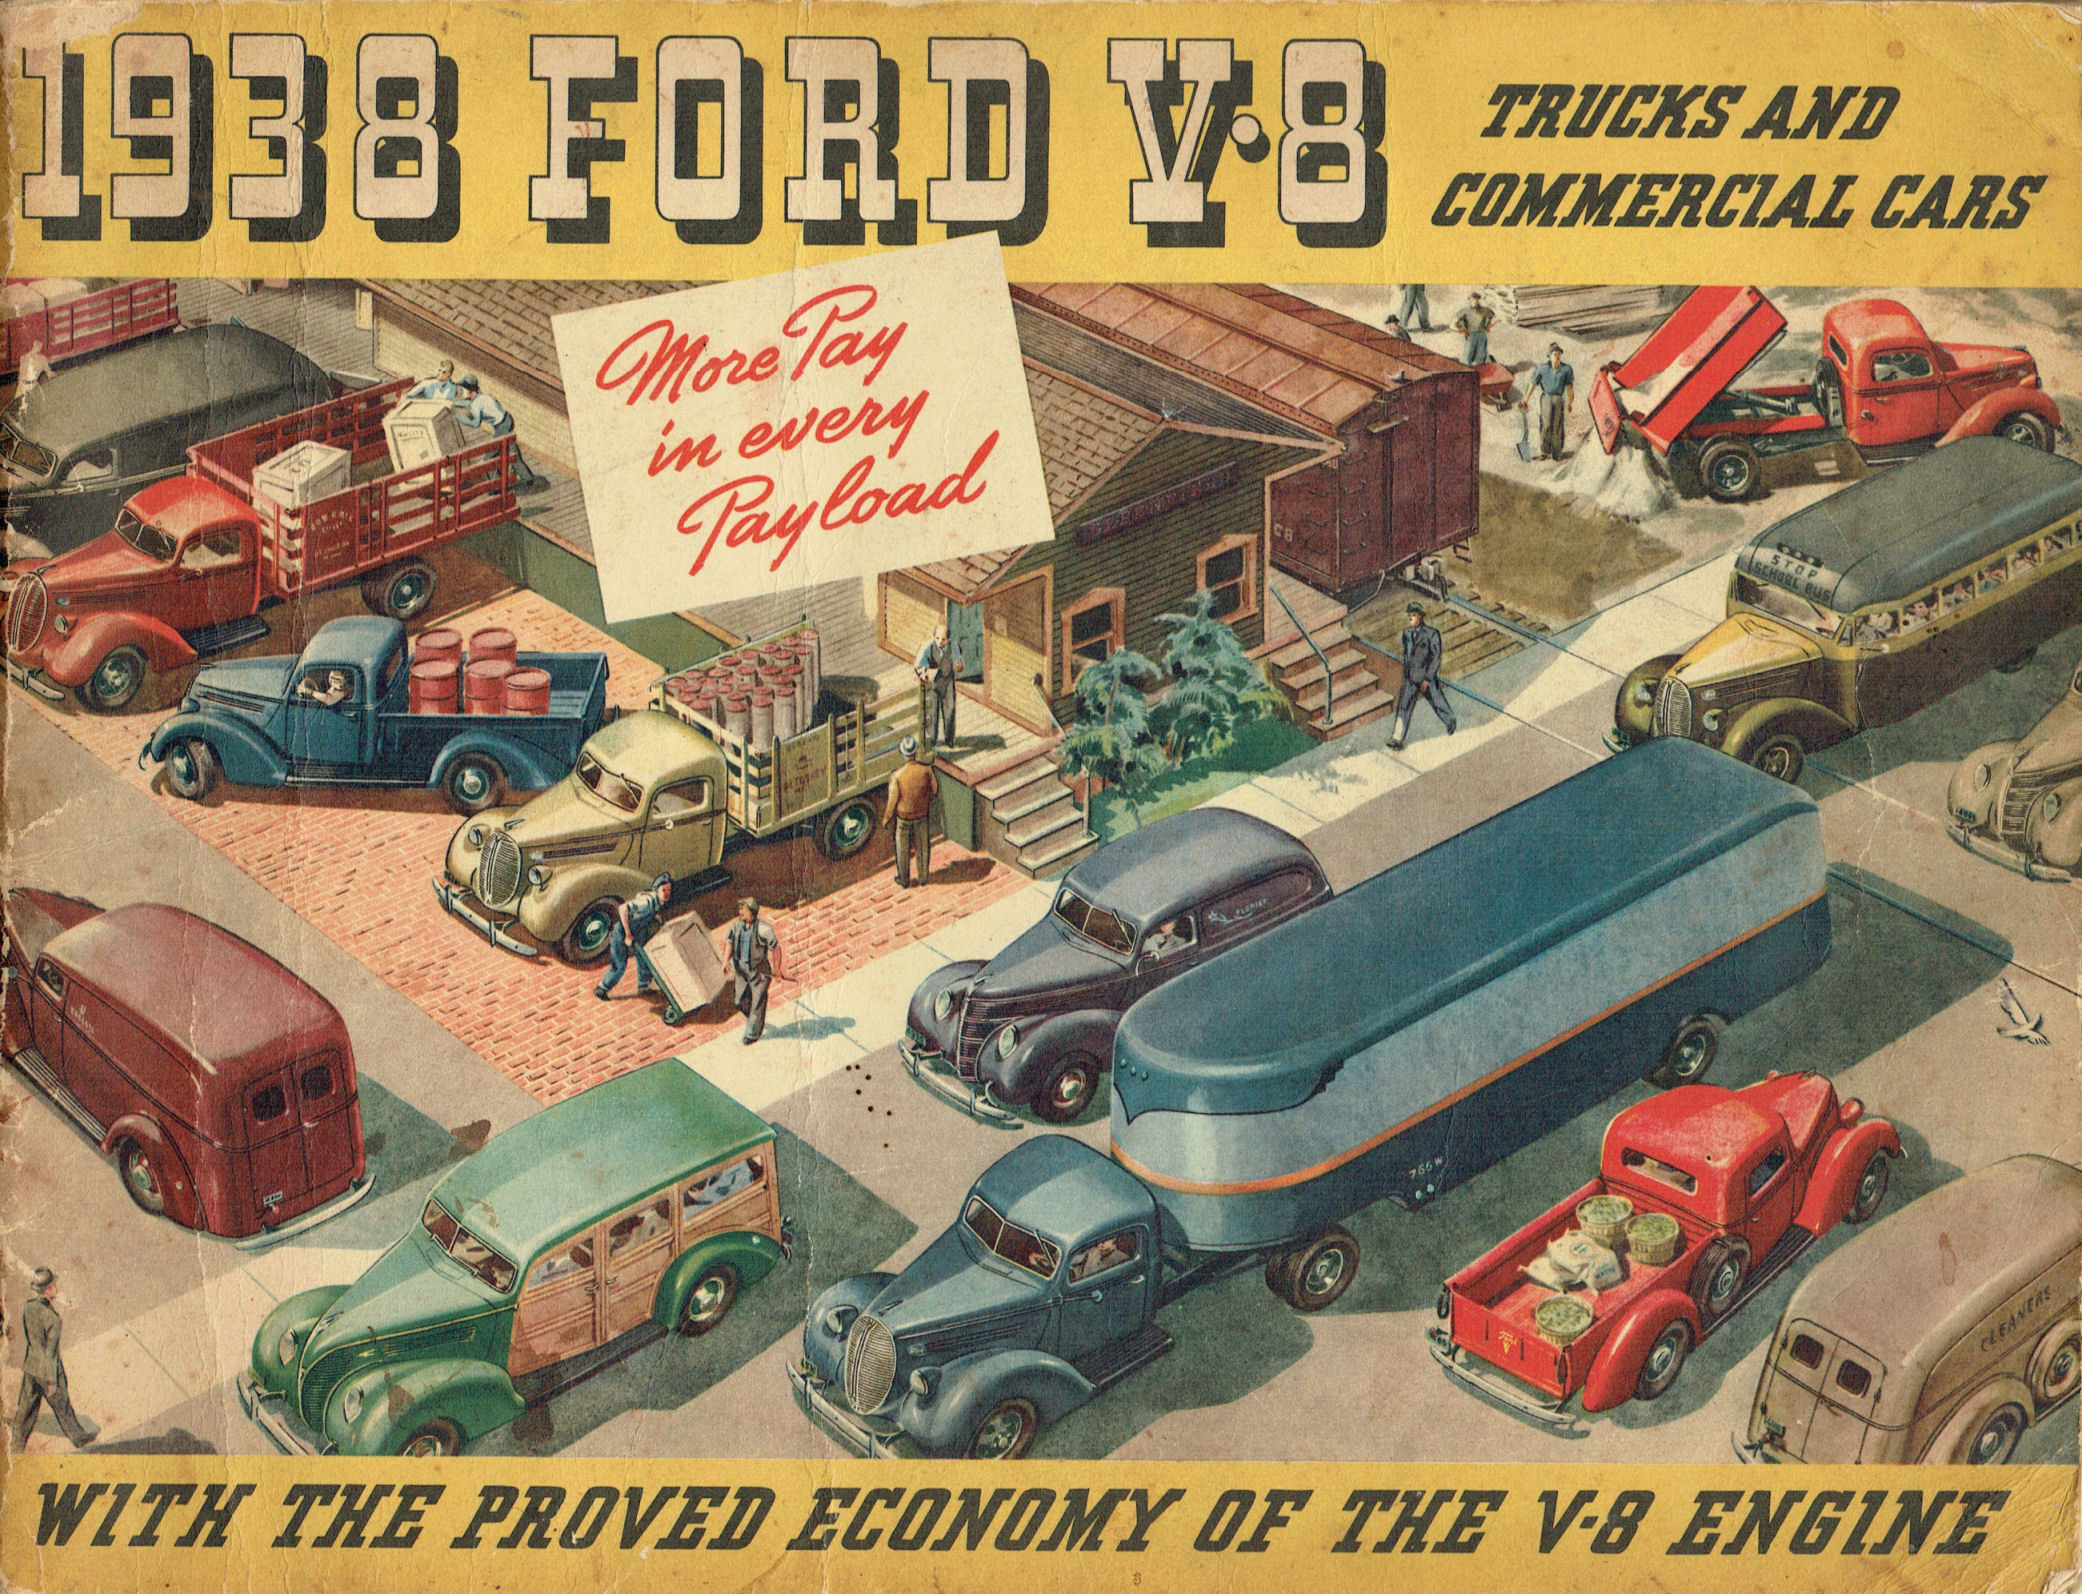 1938_Ford_Truck_Full_Line_Cdn-00